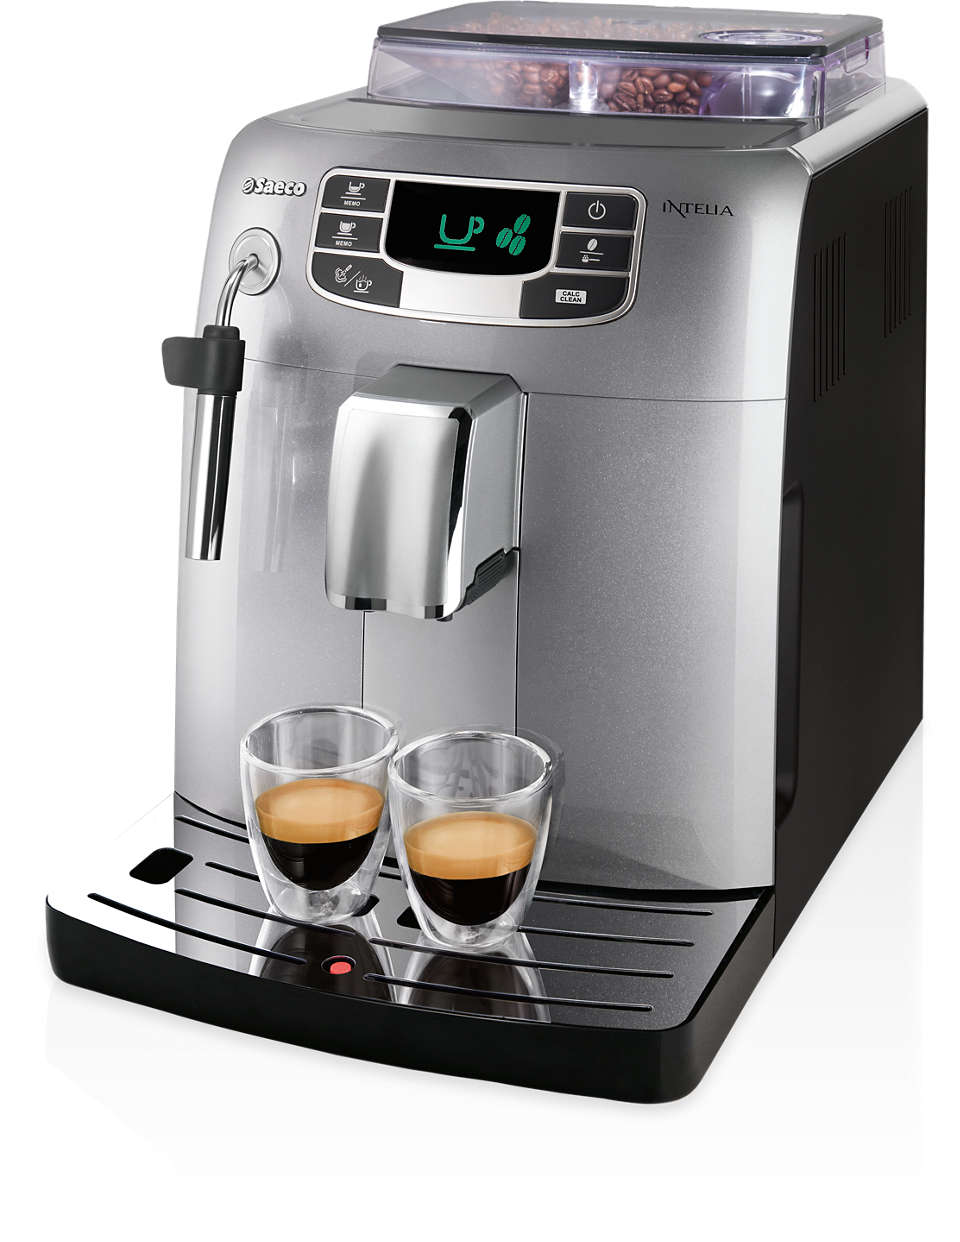 Espresso en koffie met één druk op de knop